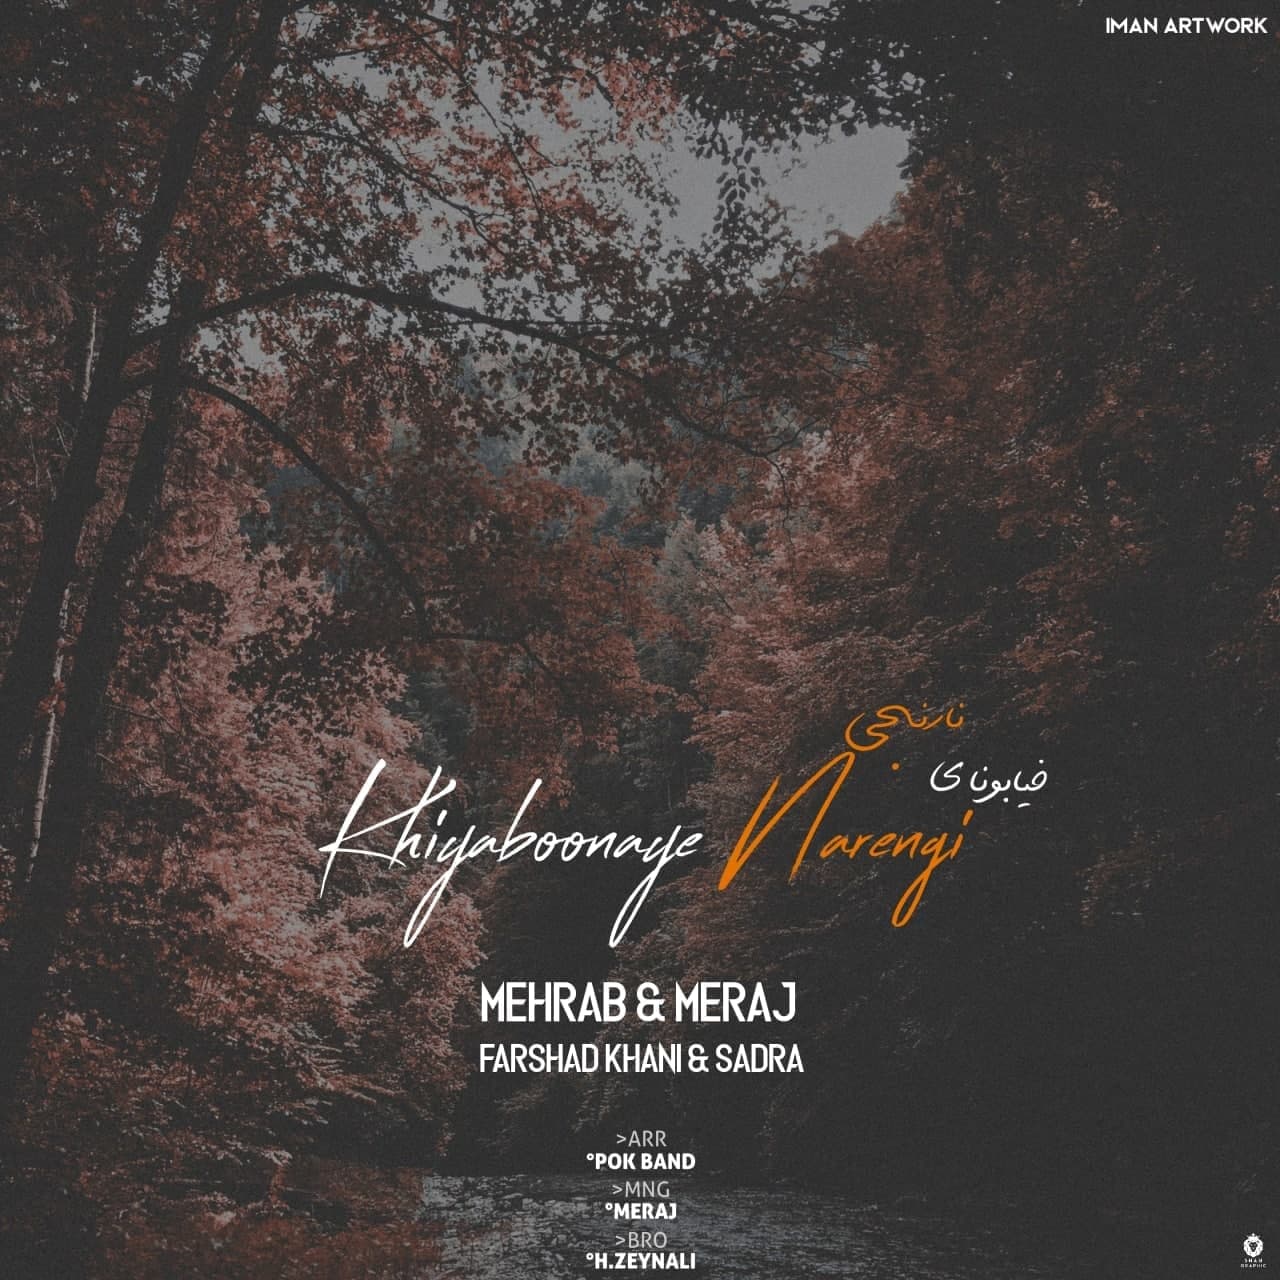  دانلود آهنگ جدید مهراب - خیابونای نارنجی | Download New Music By Mehrab & Meraj (Feat. Farshad Khani & Sadra) - Khiaboonaye Narenji